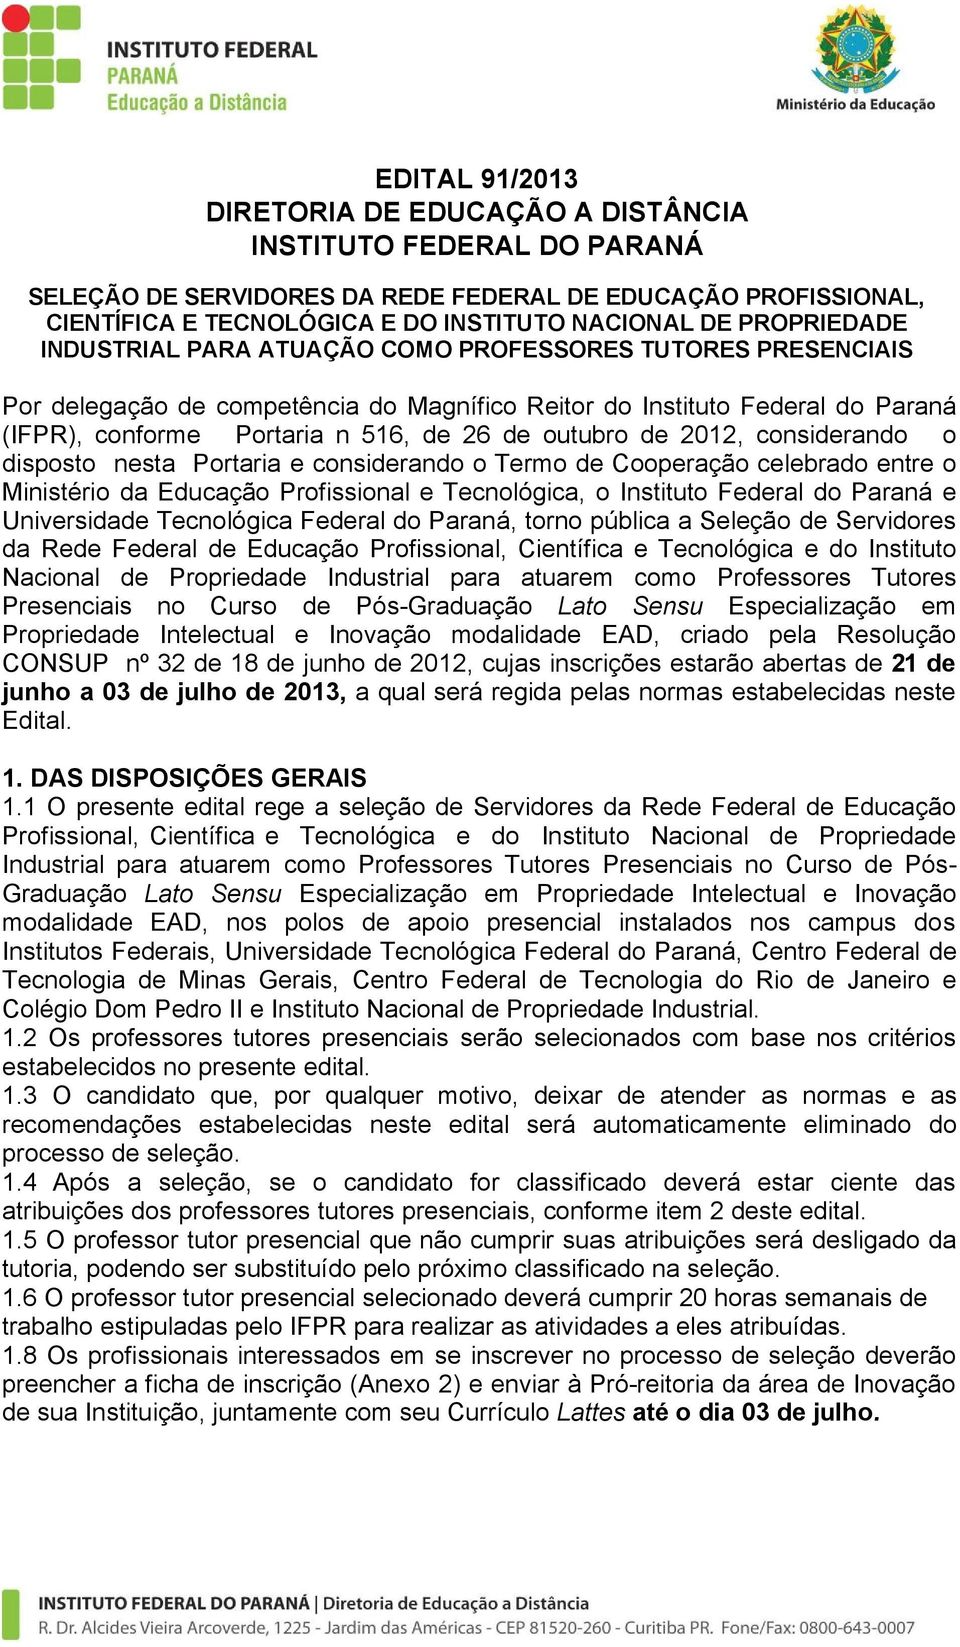 outubro de 2012, considerando o disposto nesta Portaria e considerando o Termo de Cooperação celebrado entre o Ministério da Educação Profissional e Tecnológica, o Instituto Federal do Paraná e